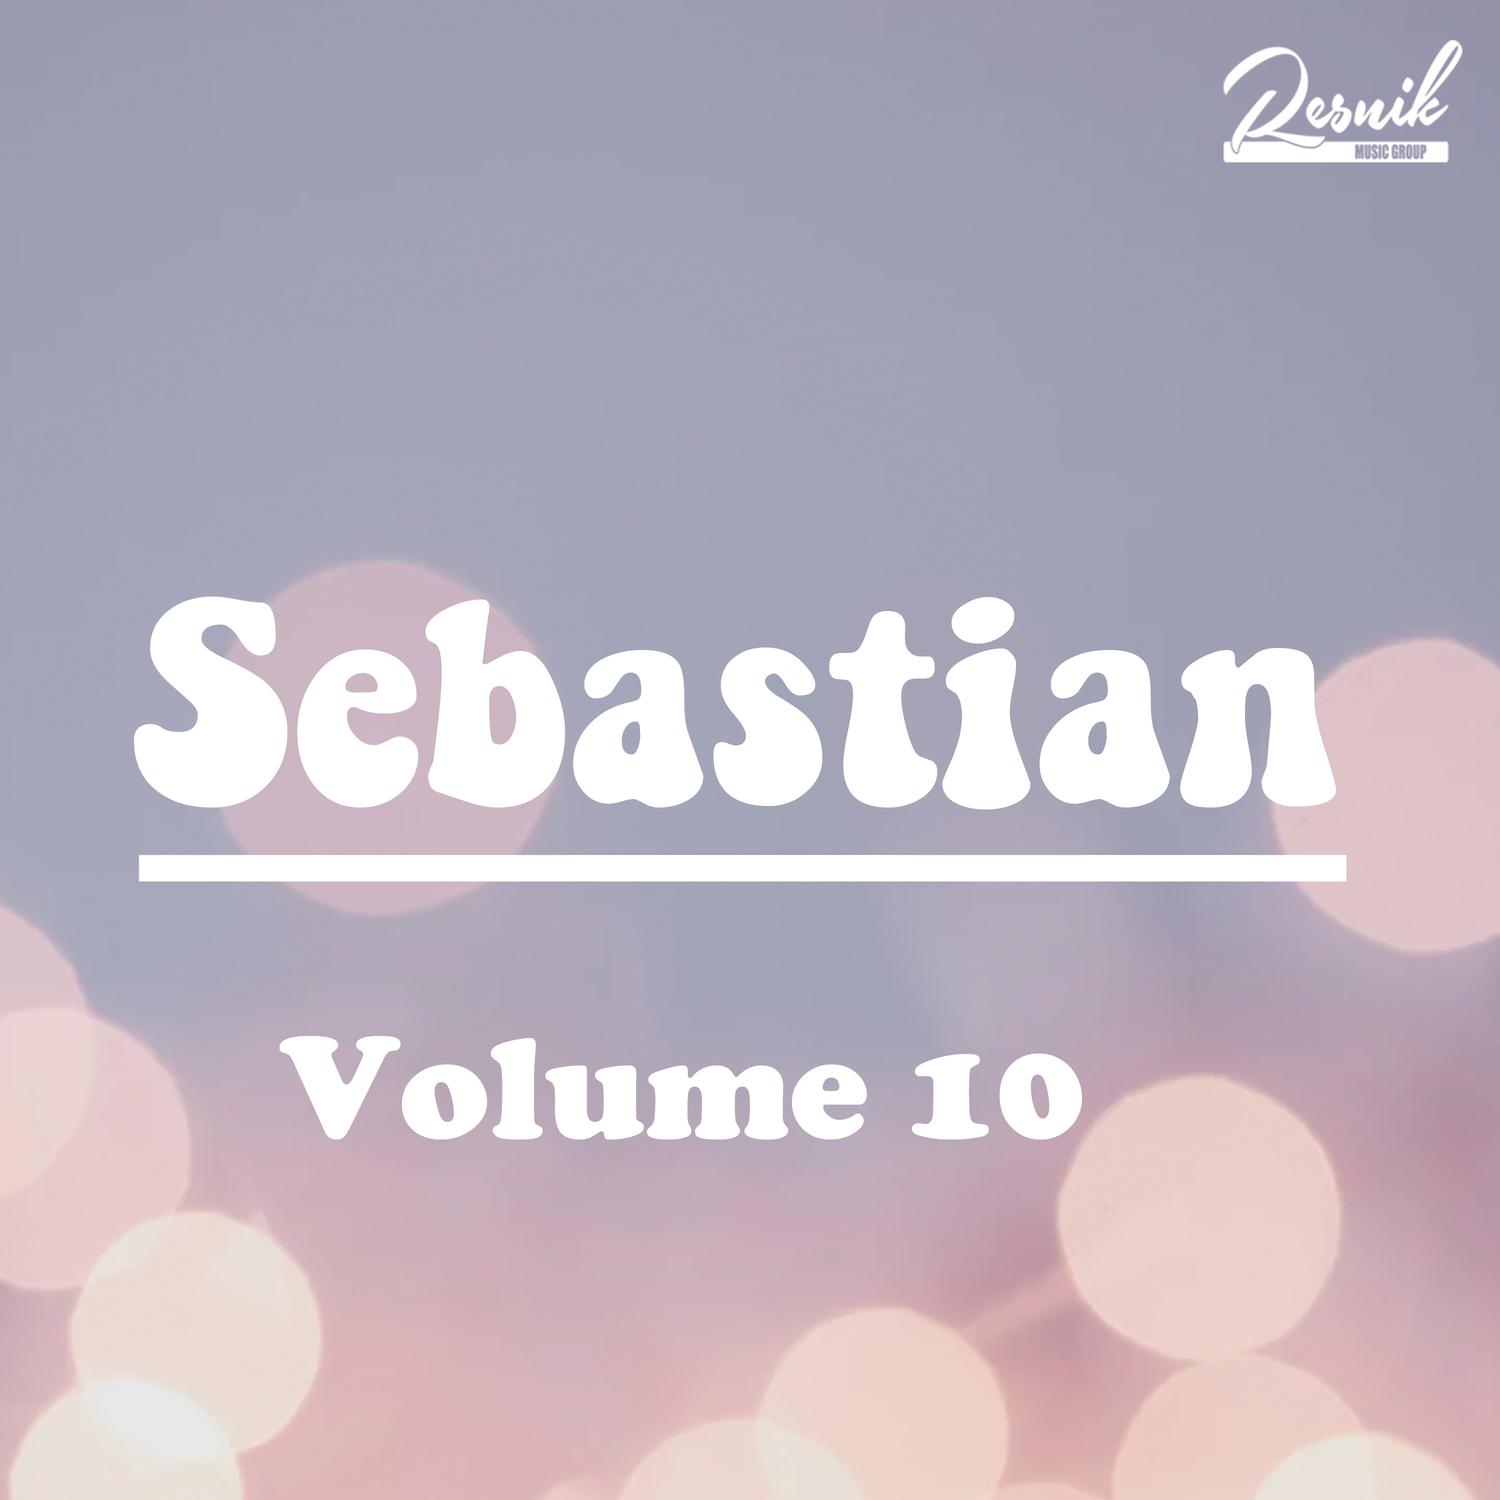 Sebastian Vol. 10